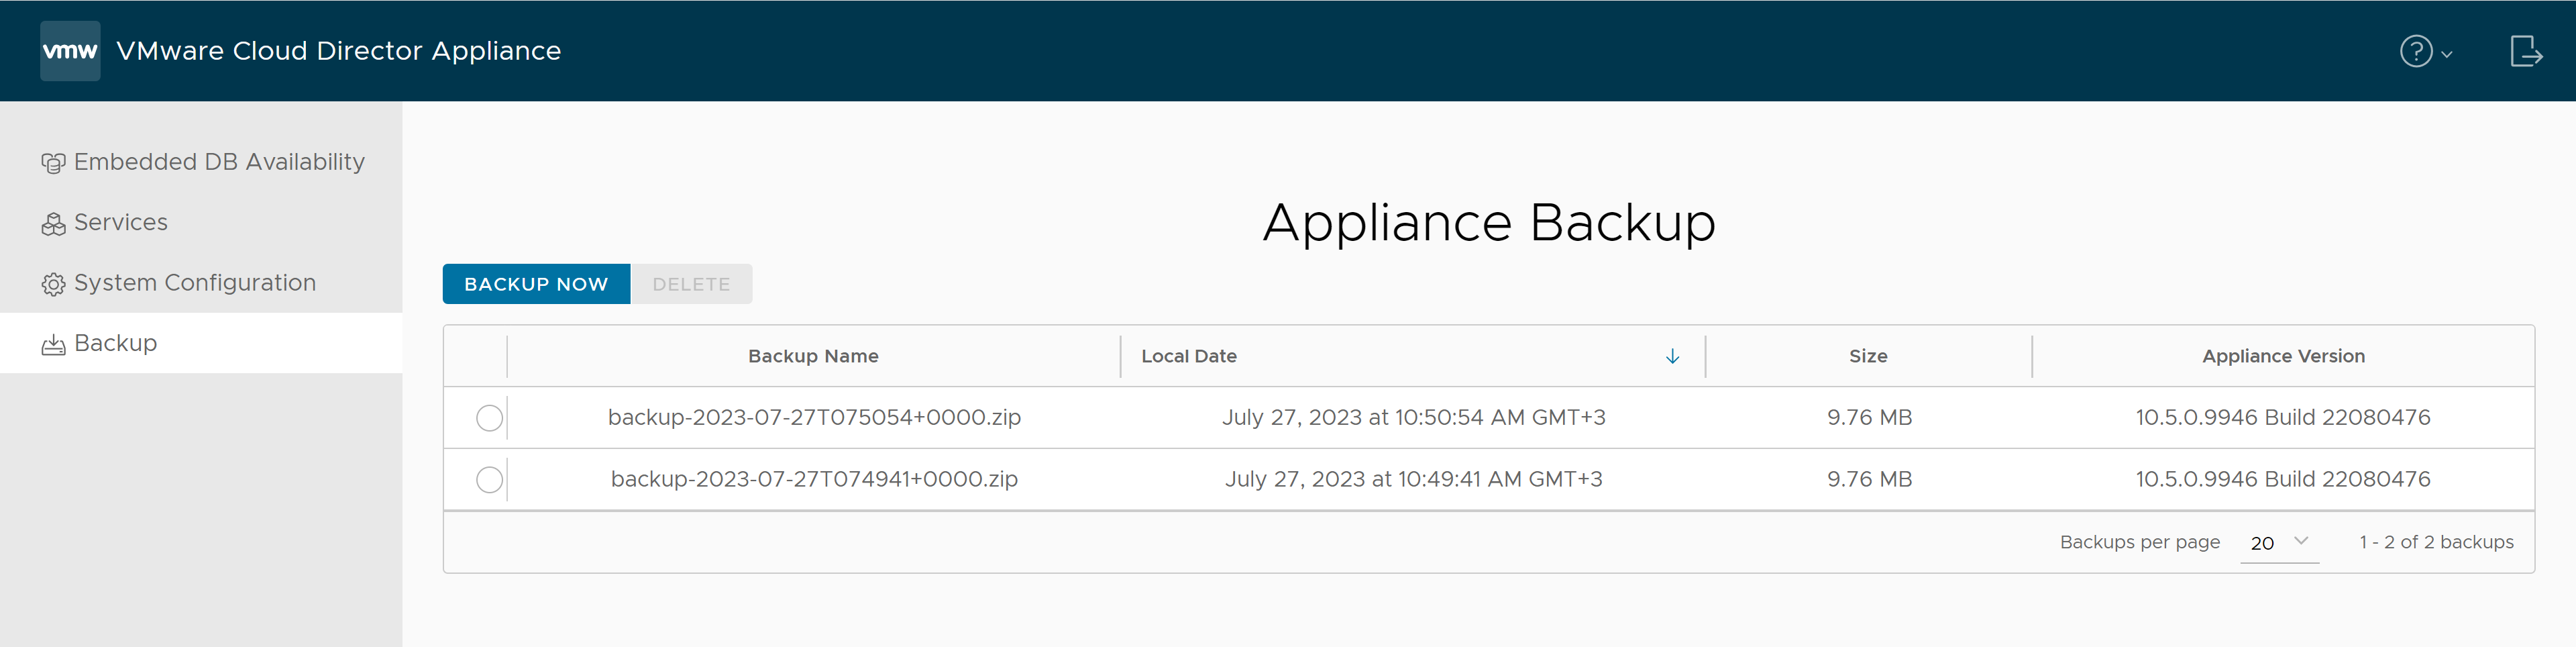 Nella scheda Backup dell'interfaccia utente di gestione dell'appliance di VMware Cloud Director sono disponibili i dettagli di tutti i backup esistenti.